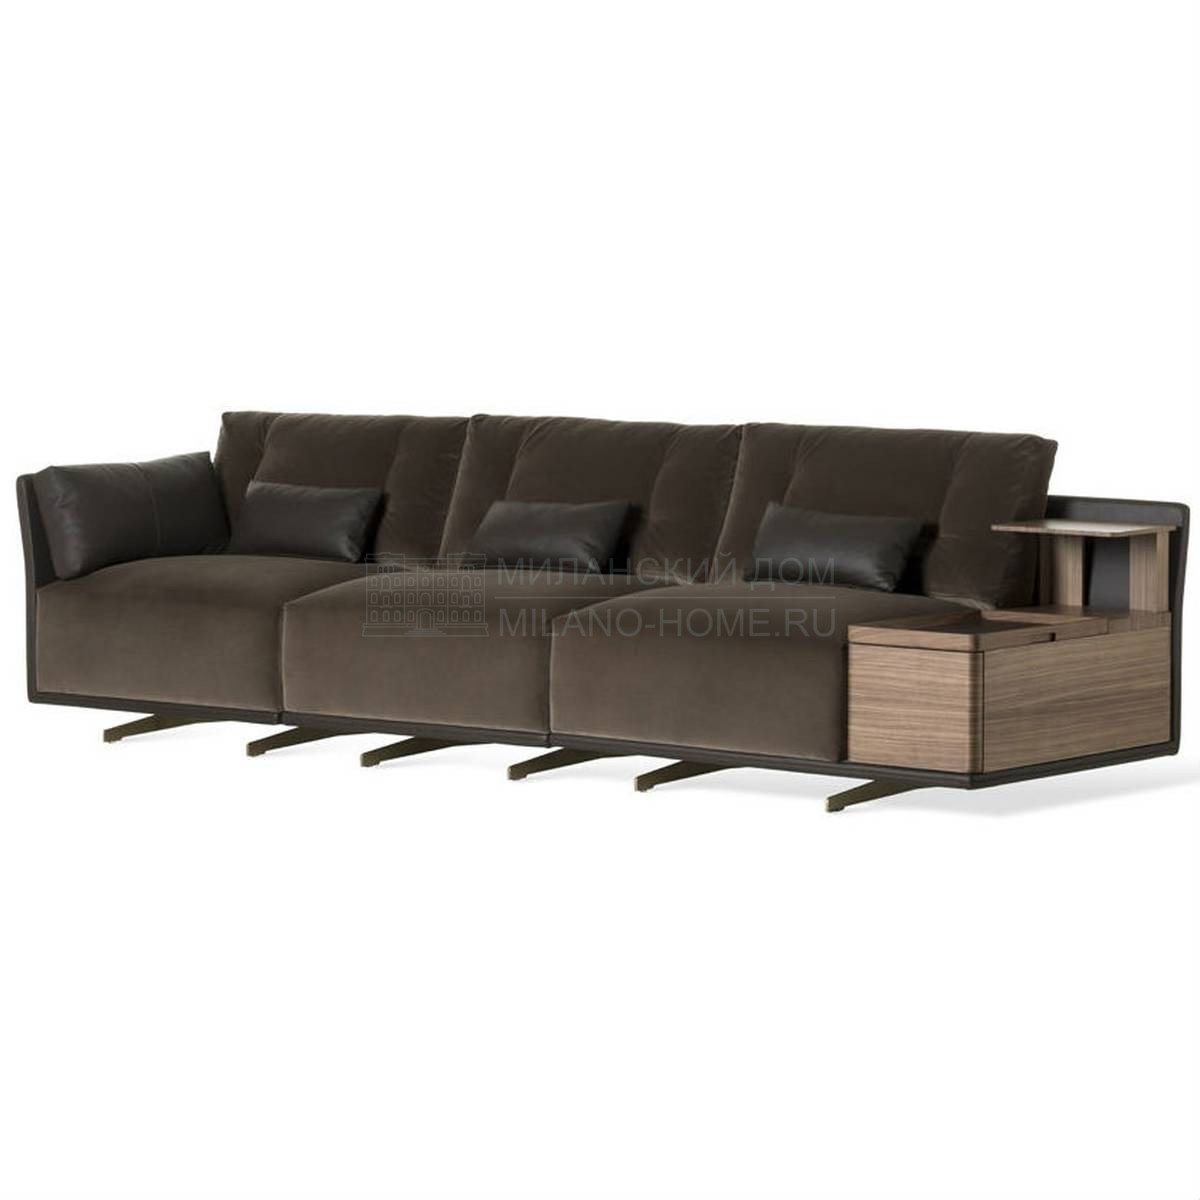 Прямой диван September sofa из Италии фабрики MEDEA (Life style)